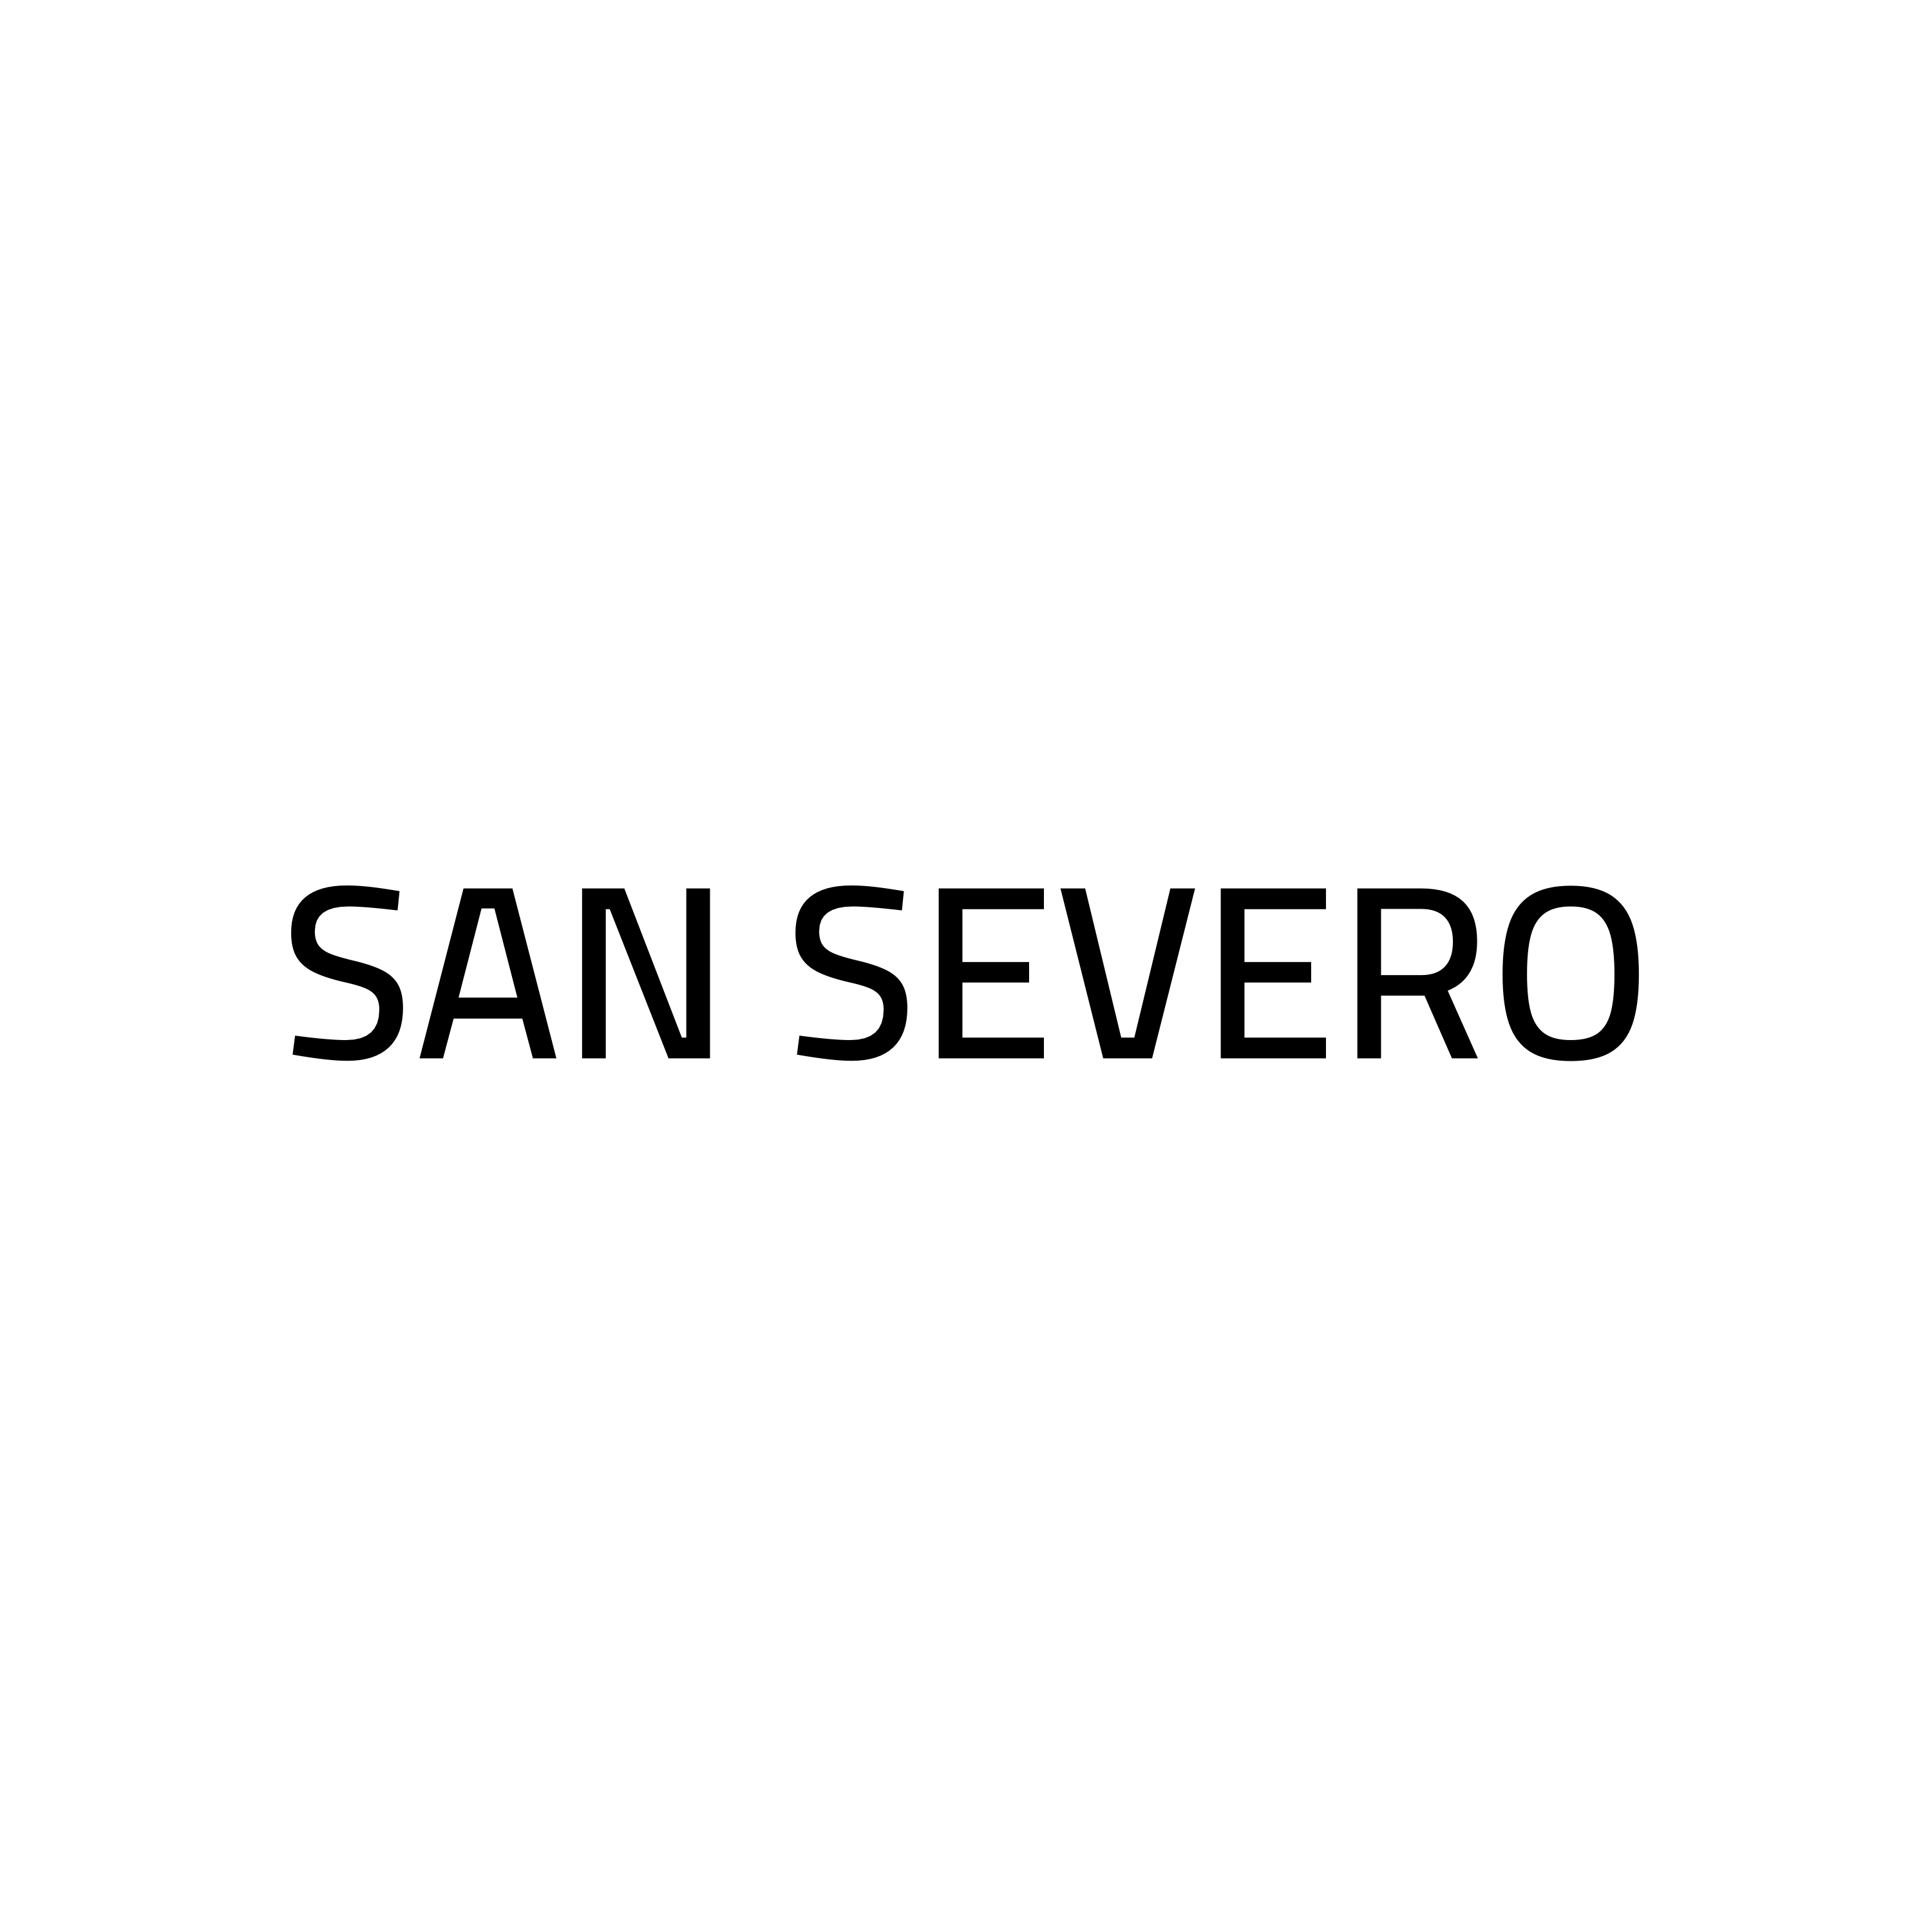 SAN SEVERO